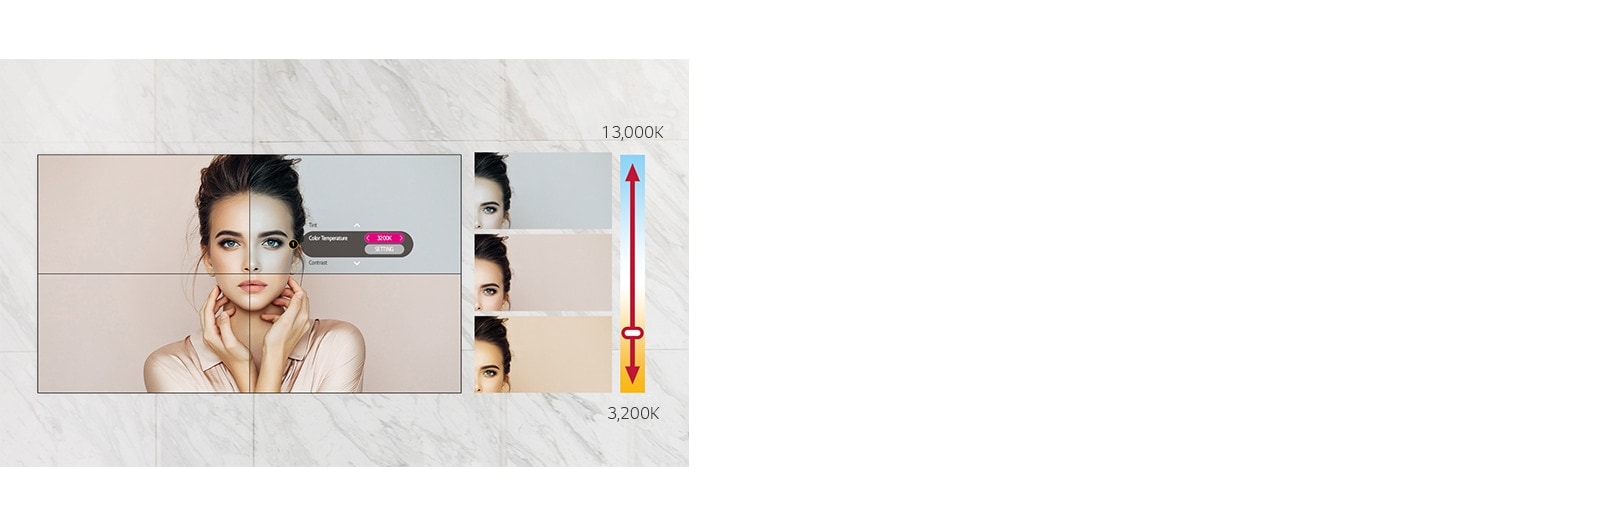 49VL5G có thể điều chỉnh nhiệt độ màu từ 3.200K đến 13.000K theo đơn vị 100K.